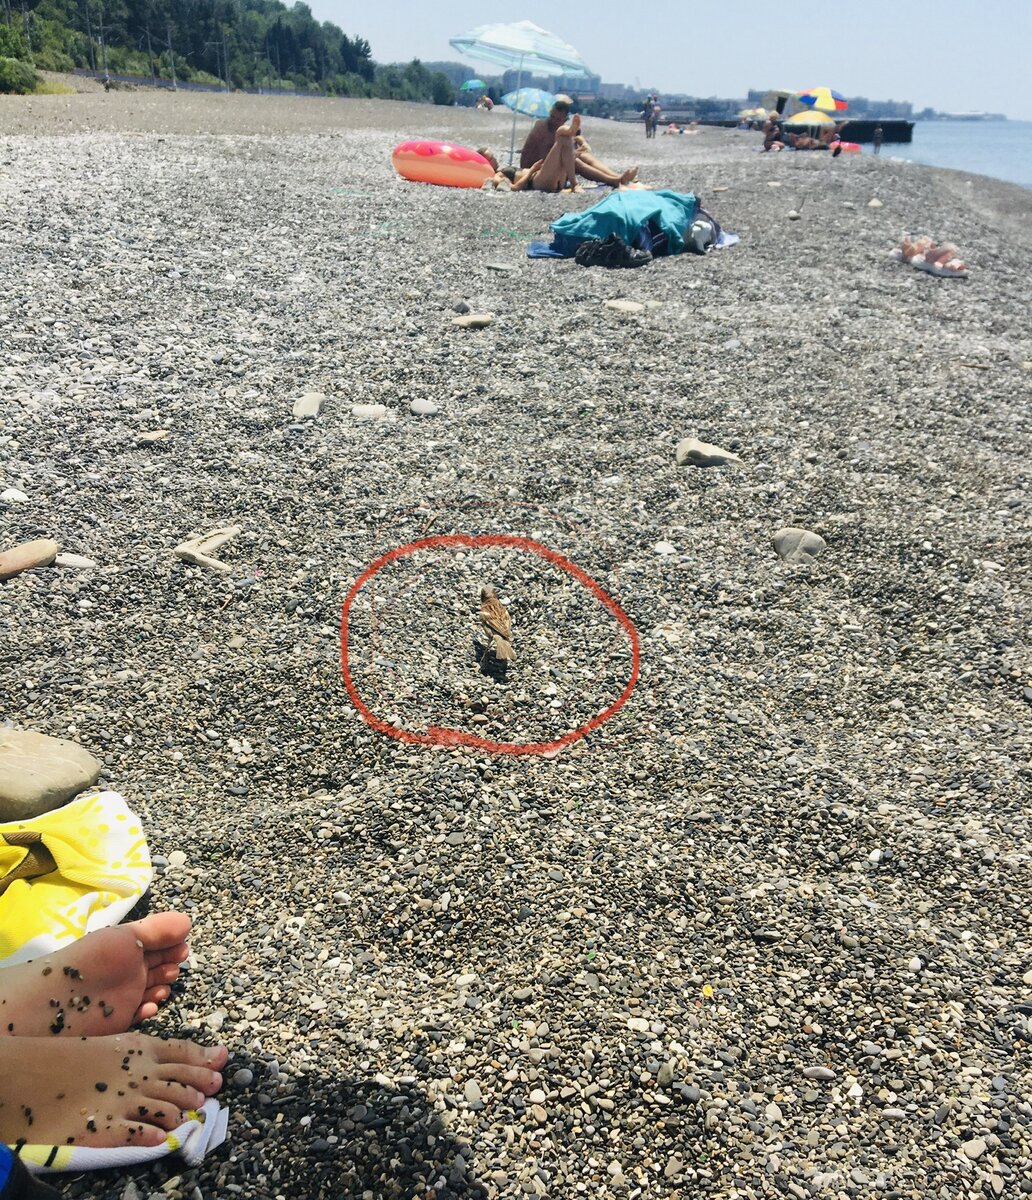 Удобно цеплять сучек на пляже — сразу видишь какие у них сиськи